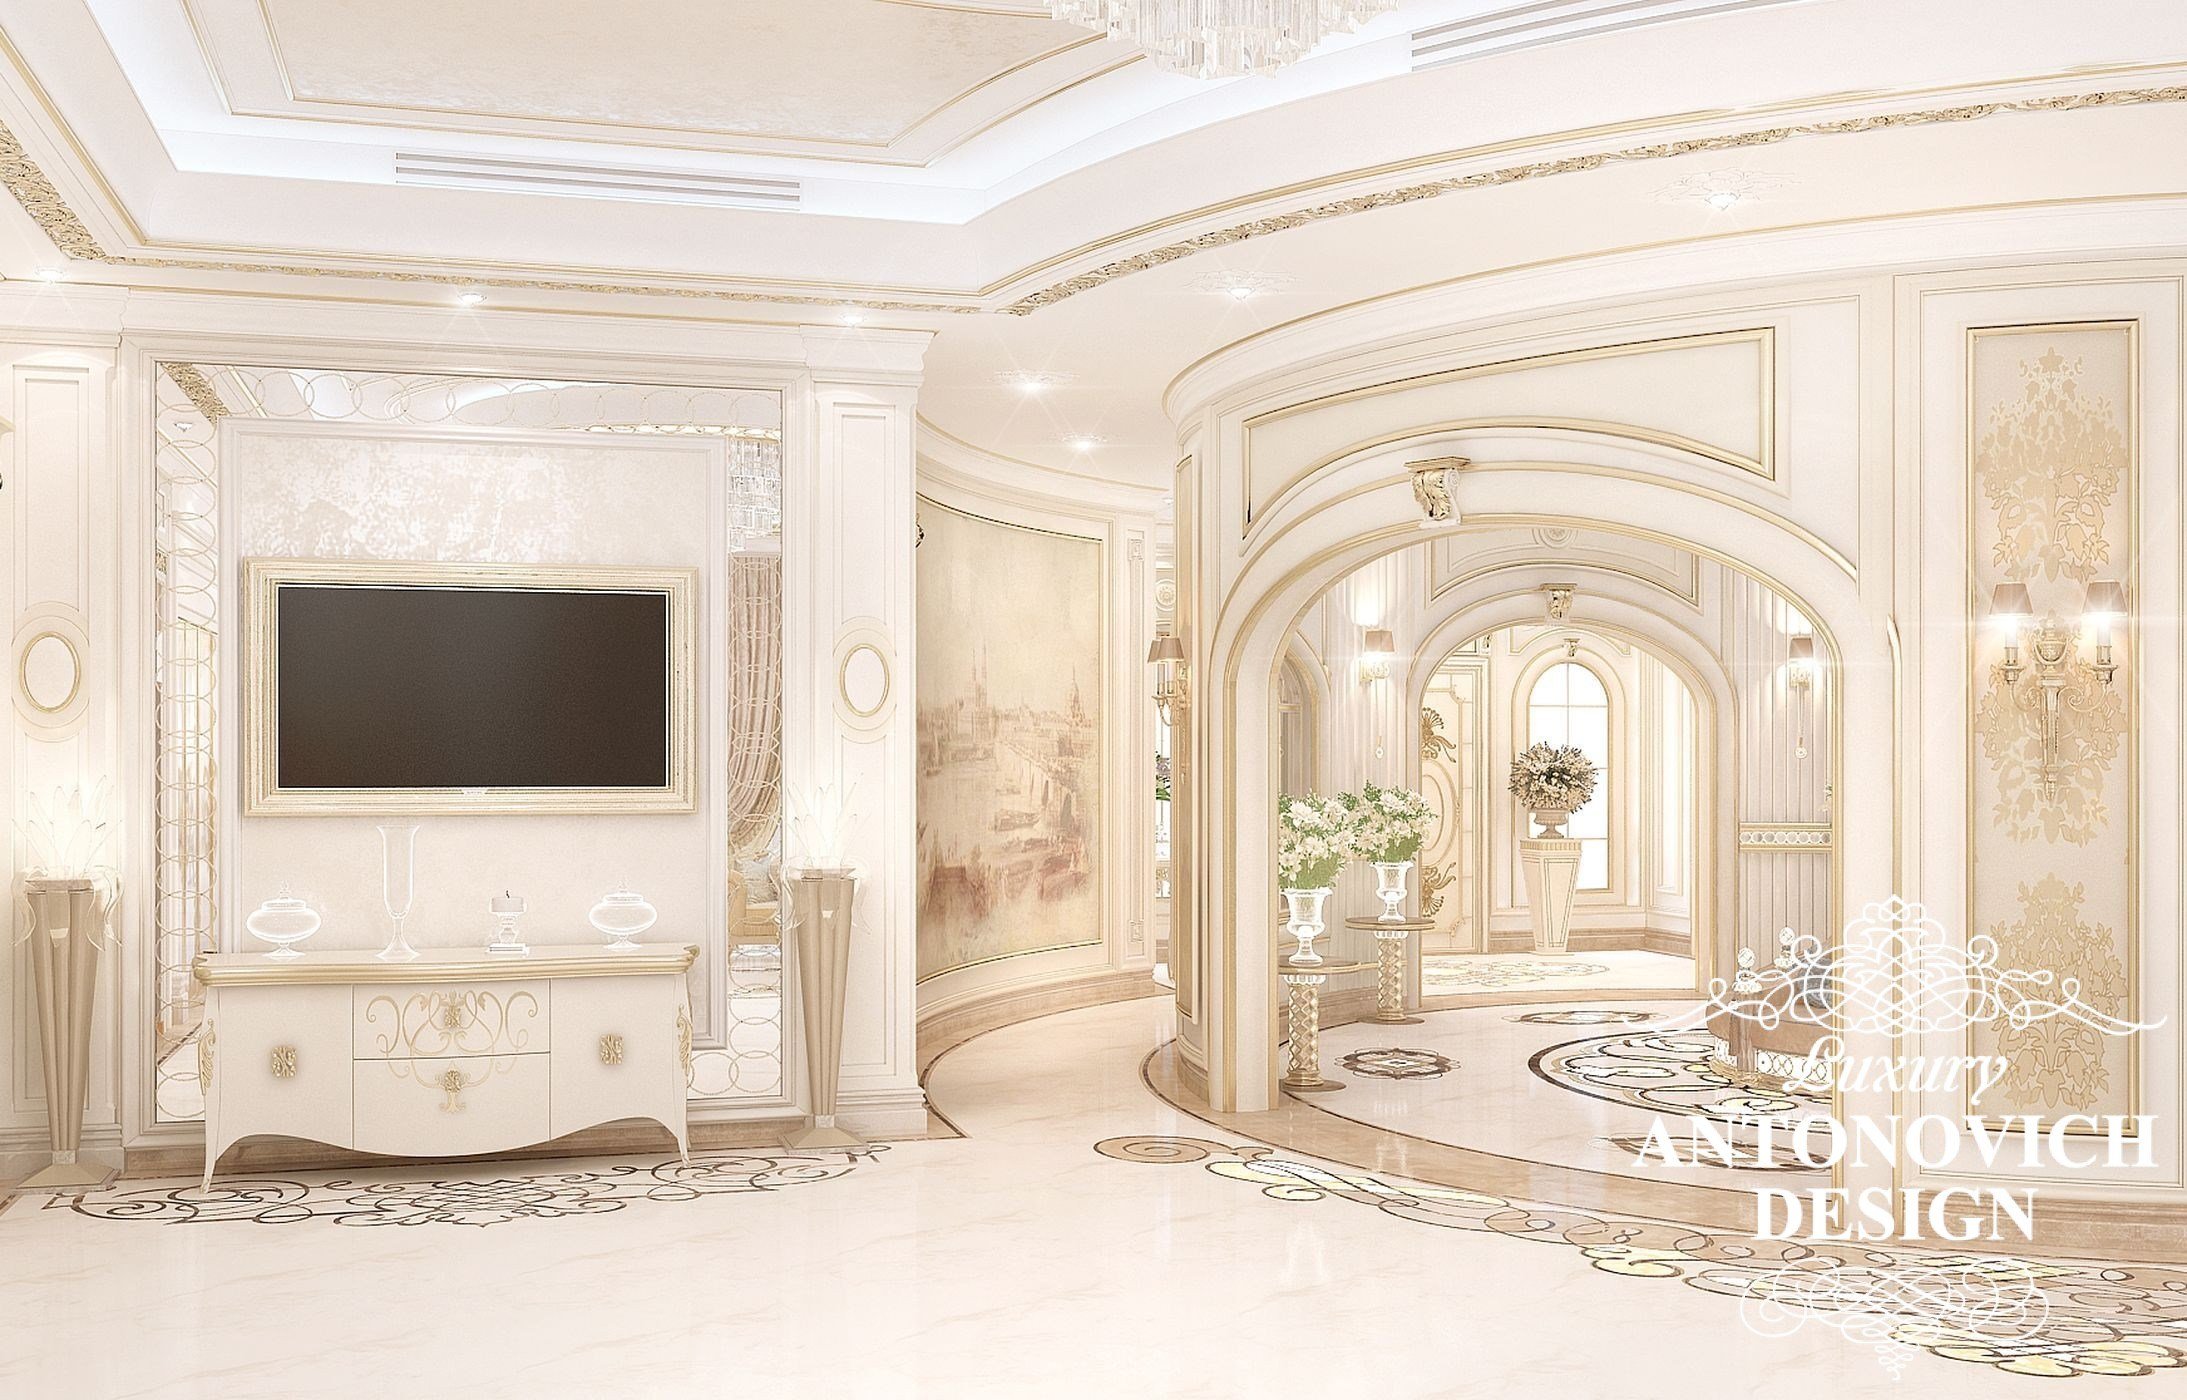 Элитный дизайн интерьера дома с роскошным холлом в классическом стиле от студии дизайна в Астане Luxury Antonovich Design